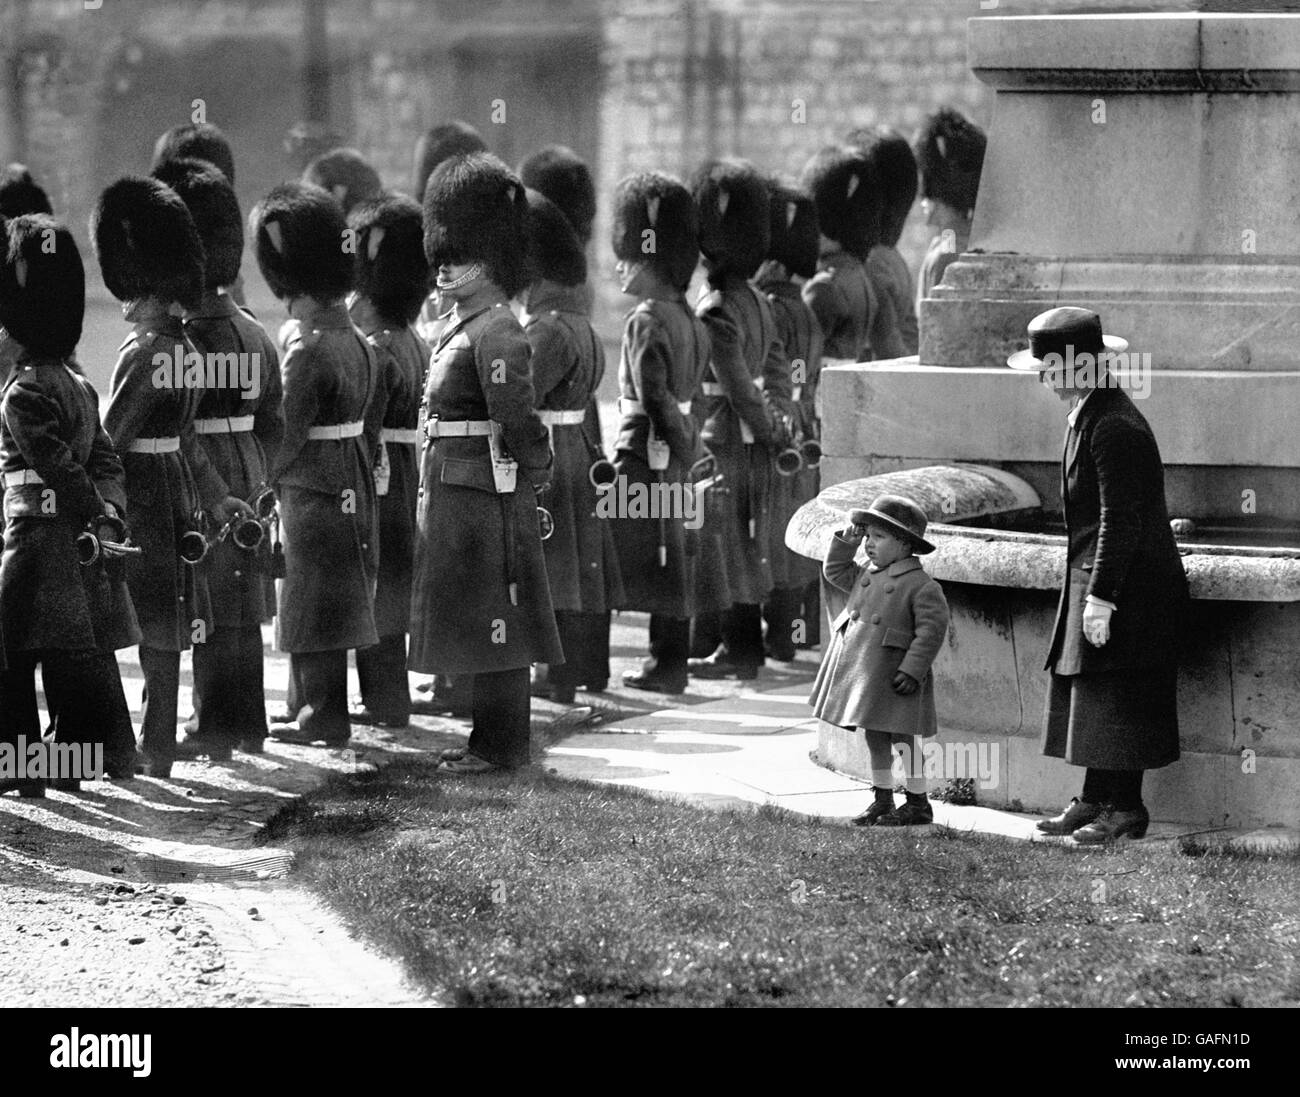 Alexander Ramsey, der Enkel des 13. earl of Dalhousie, steht mit seiner Krankenschwester unter den Mauern von Windsor Castle beim Gruß und wartet darauf, den Wachwechsel zu beobachten. Stockfoto